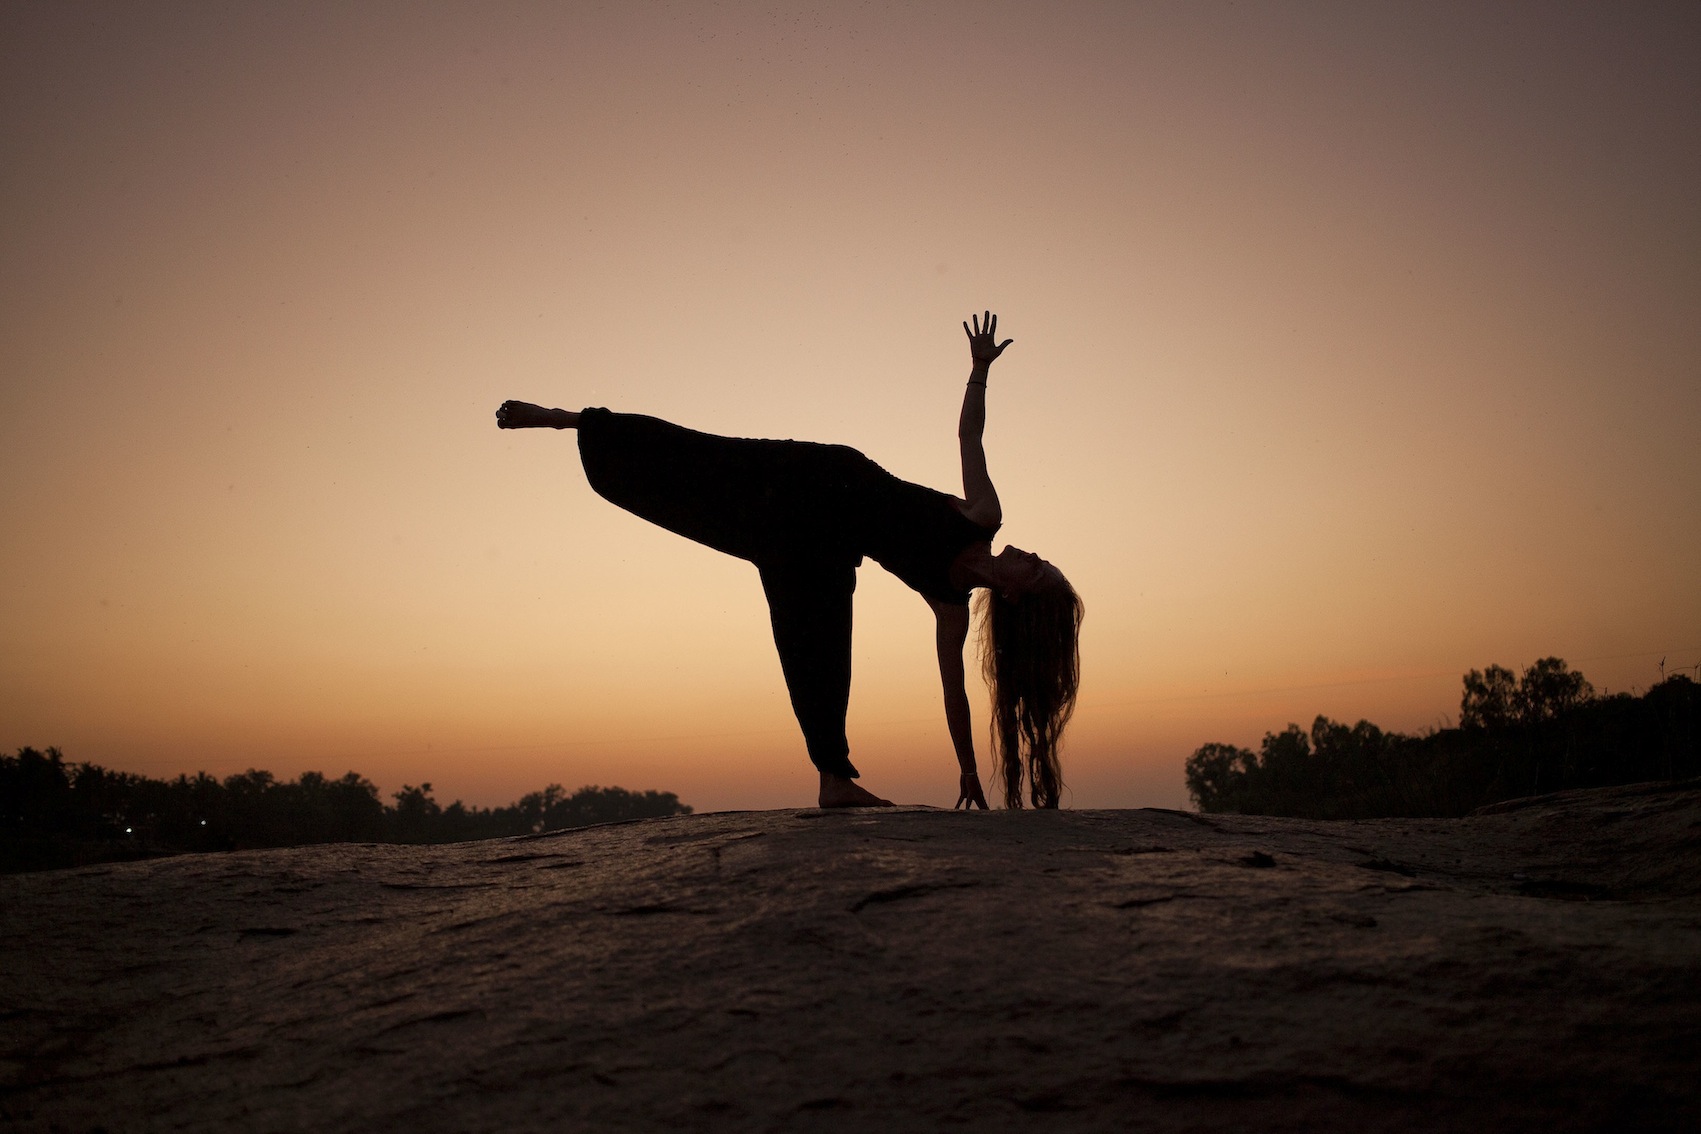 In der Verbindung von Yoga und Wandern erlebst Du Dich und die Natur um Dich herum besonders intensiv.